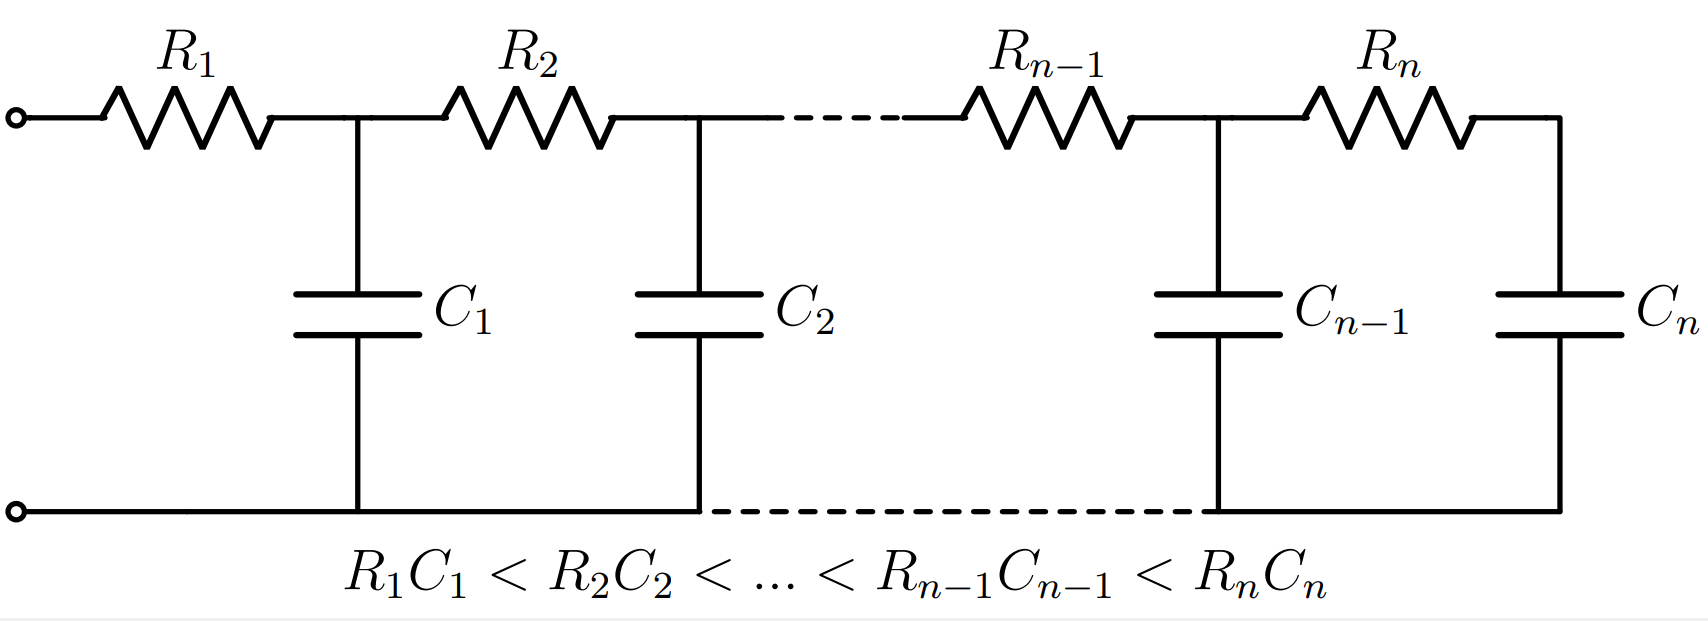 Supercapacitor - Transmission line model